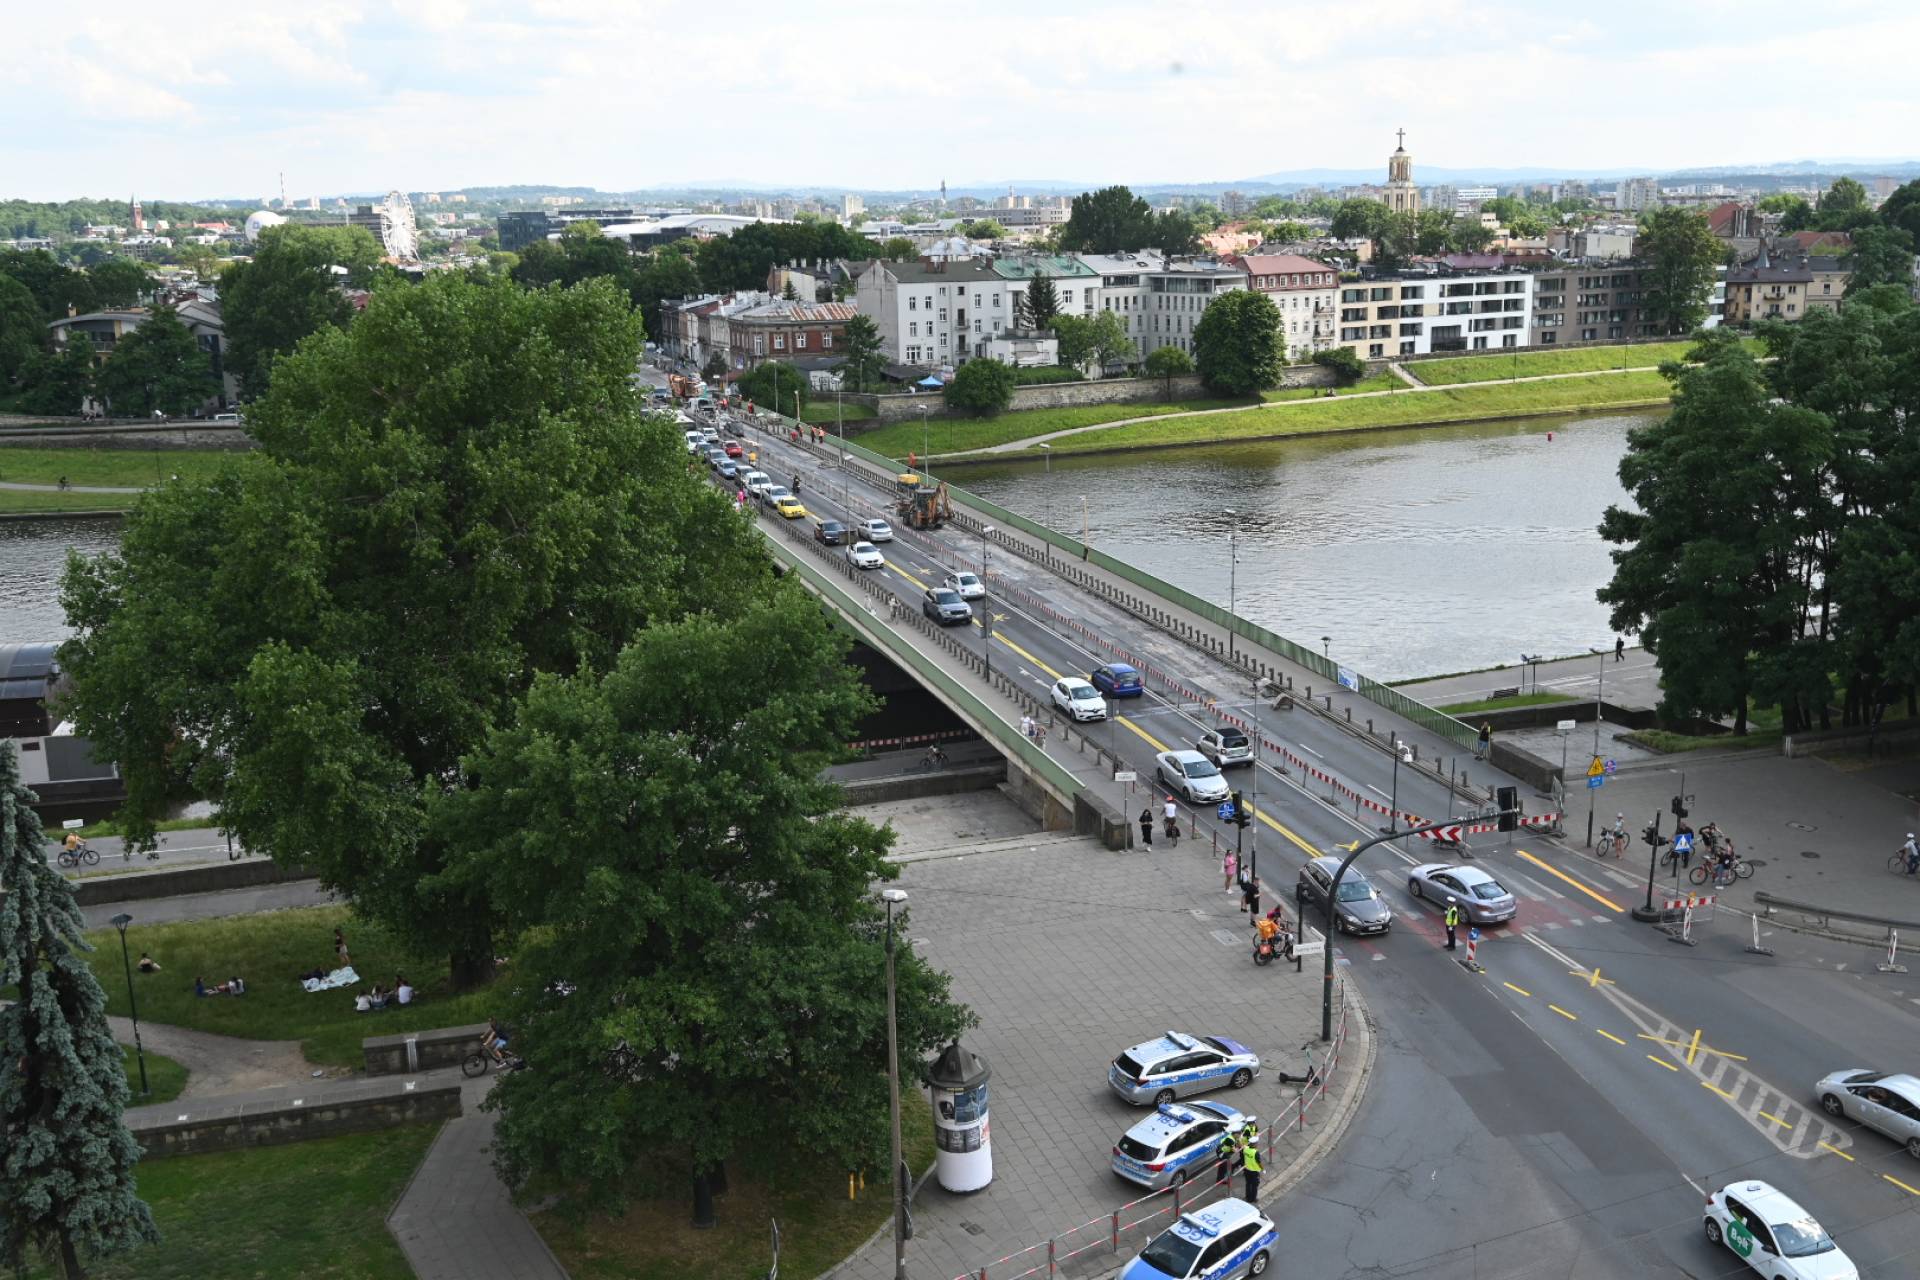 Wnioski po rozpoczęciu remontu mostu Dębnickiego: korzystać z objazdu